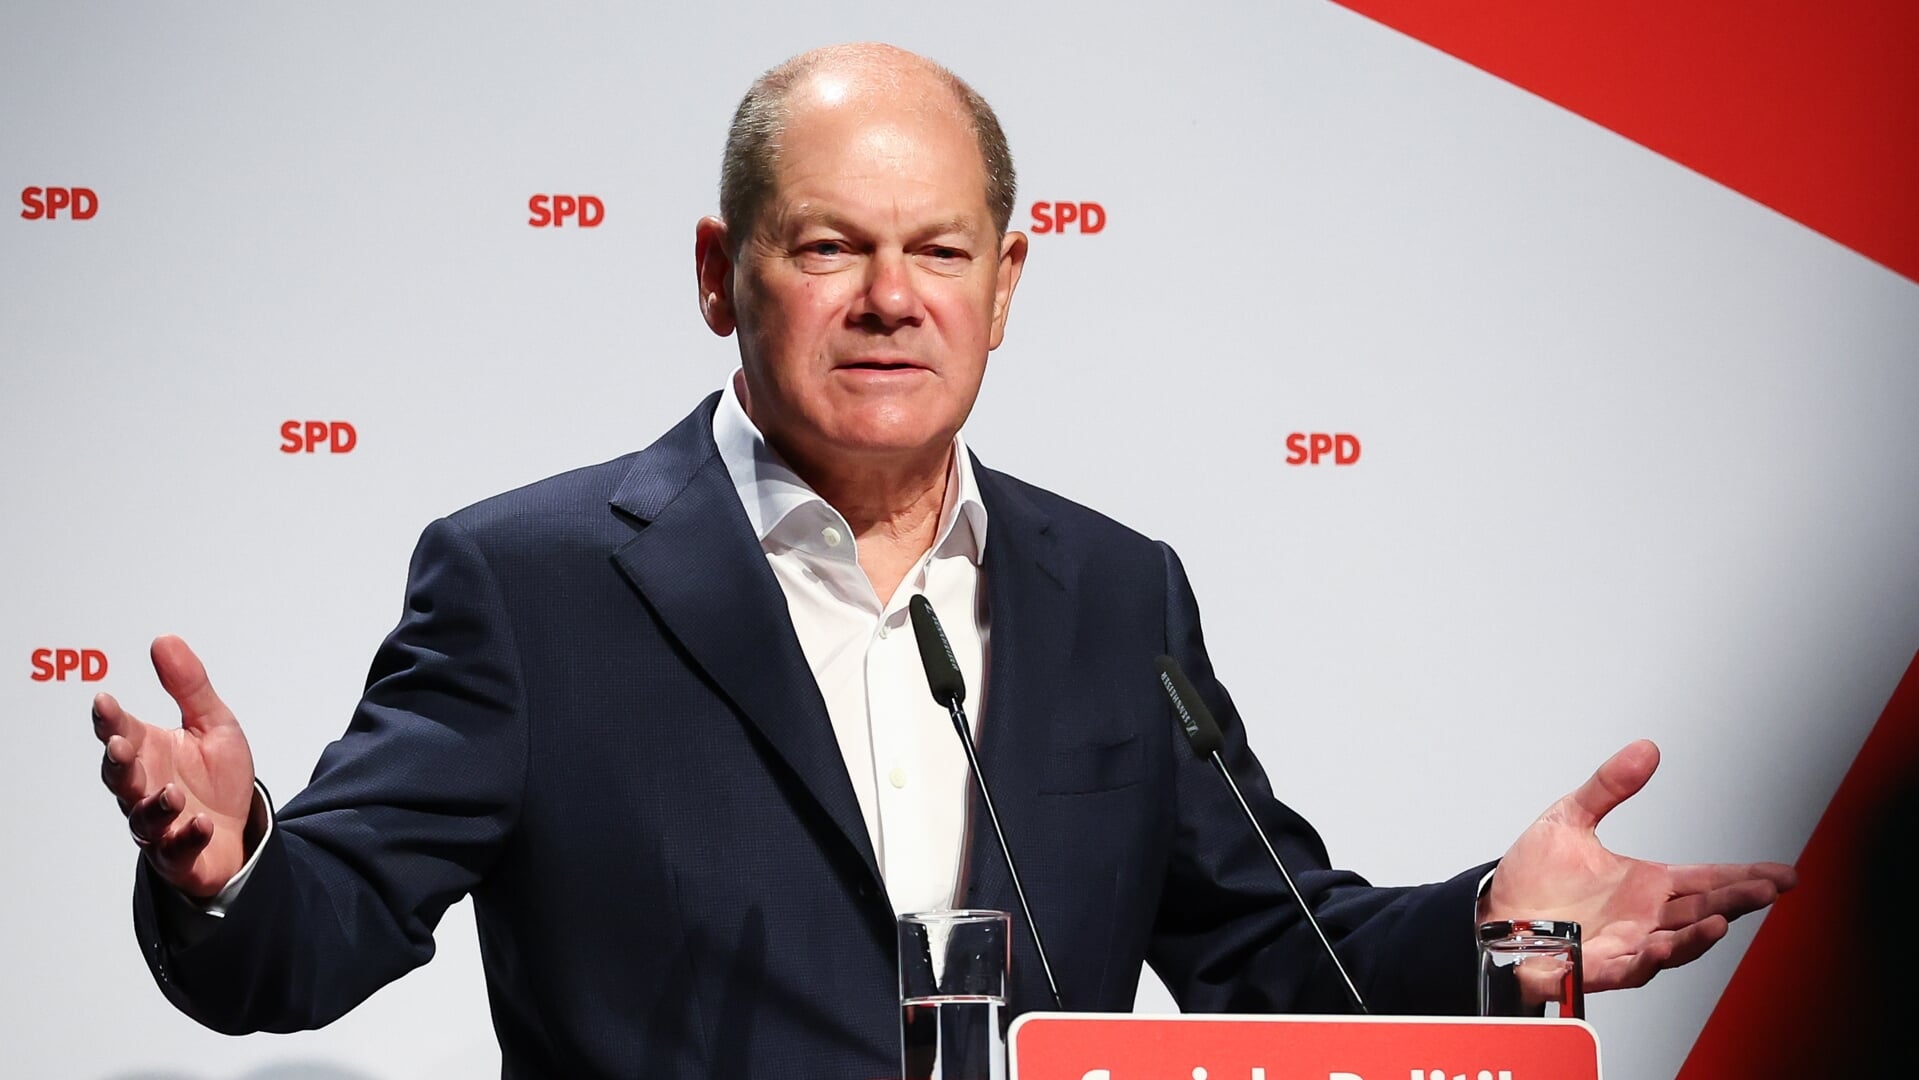 Forbundskansler Olaf Scholz tager søndag fra SPDs landsmøde i Husum til mindehøjtidlighed for knivdræbte unge i Neumünster. 